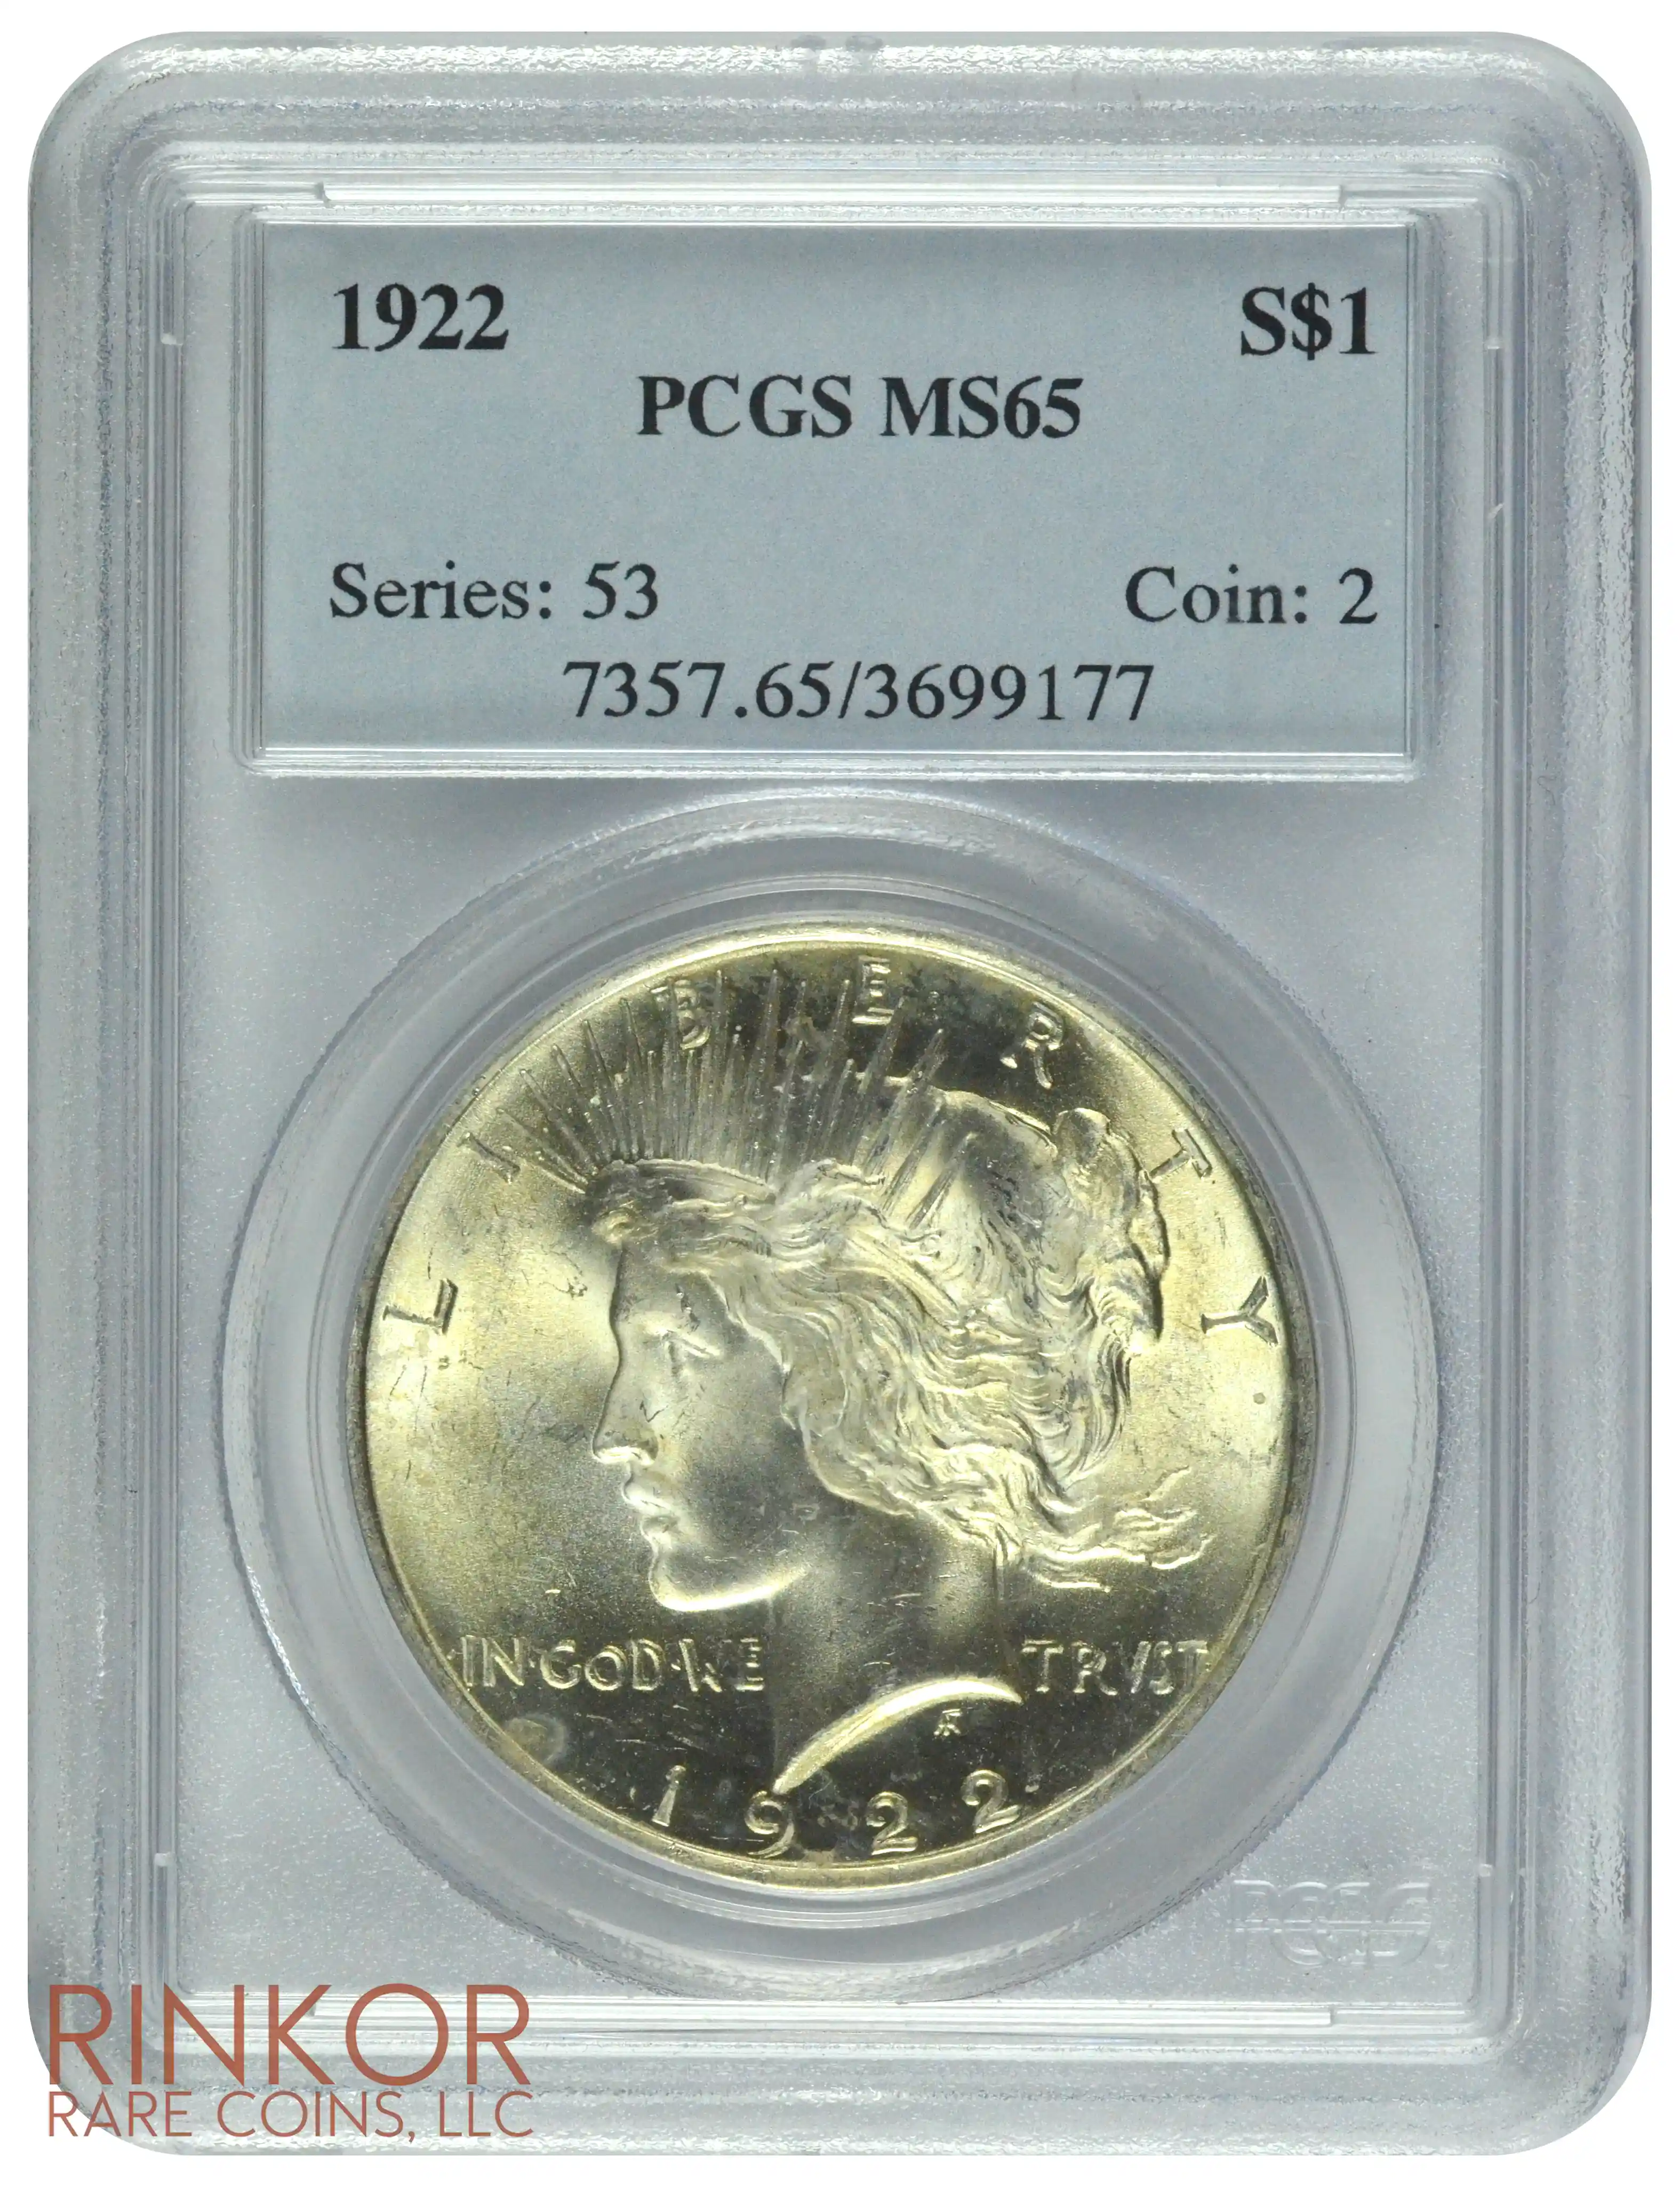 1922 $1 PCGS MS 65